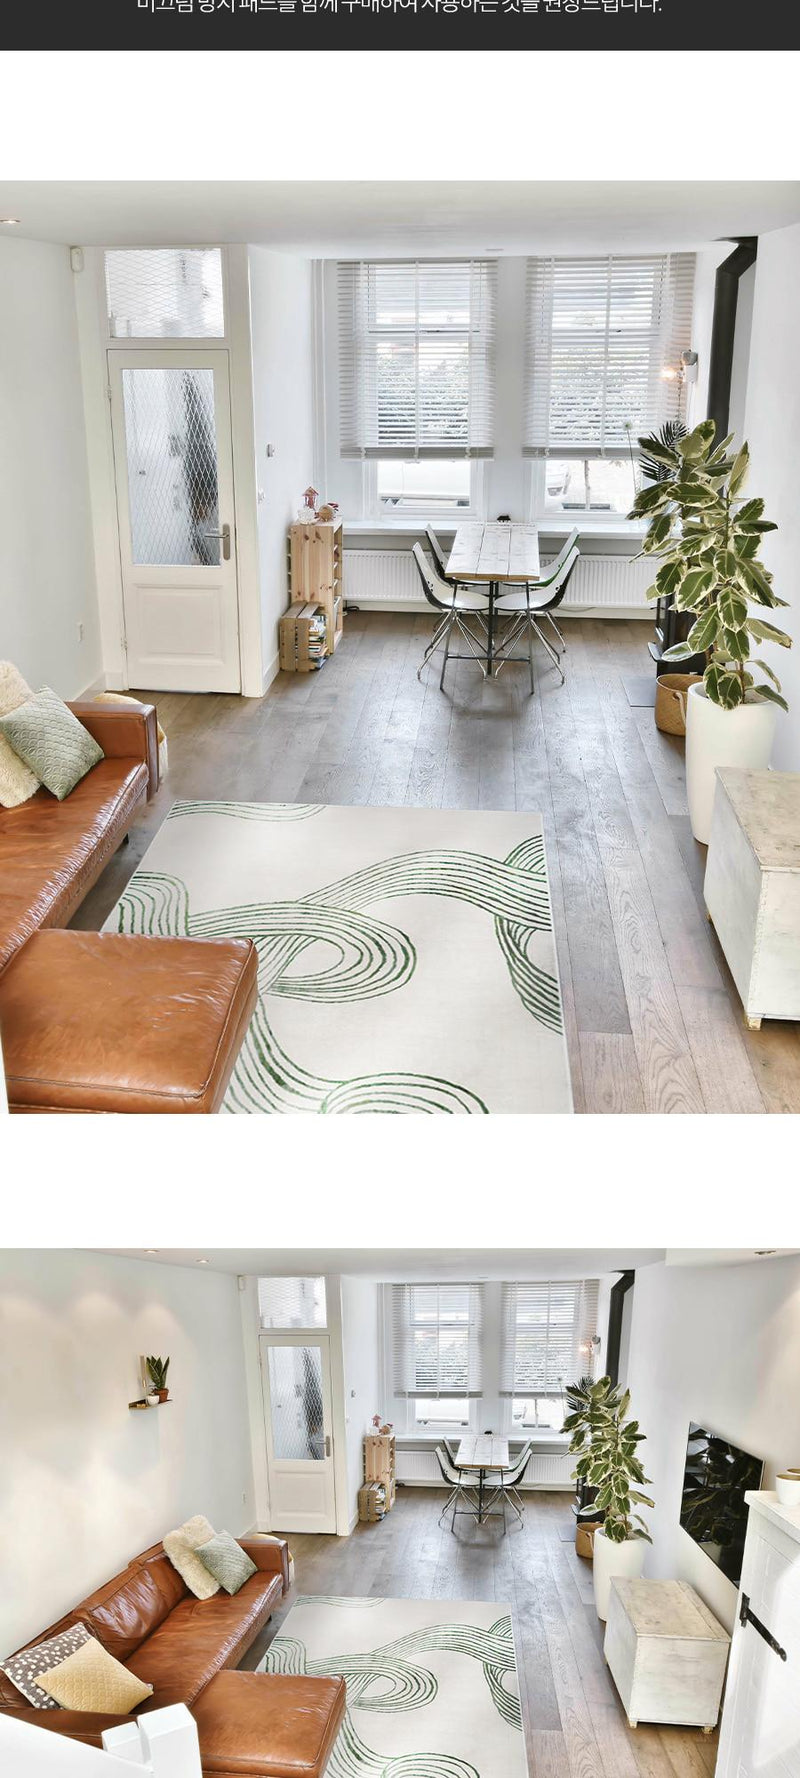 Linif life waterproof living room rug